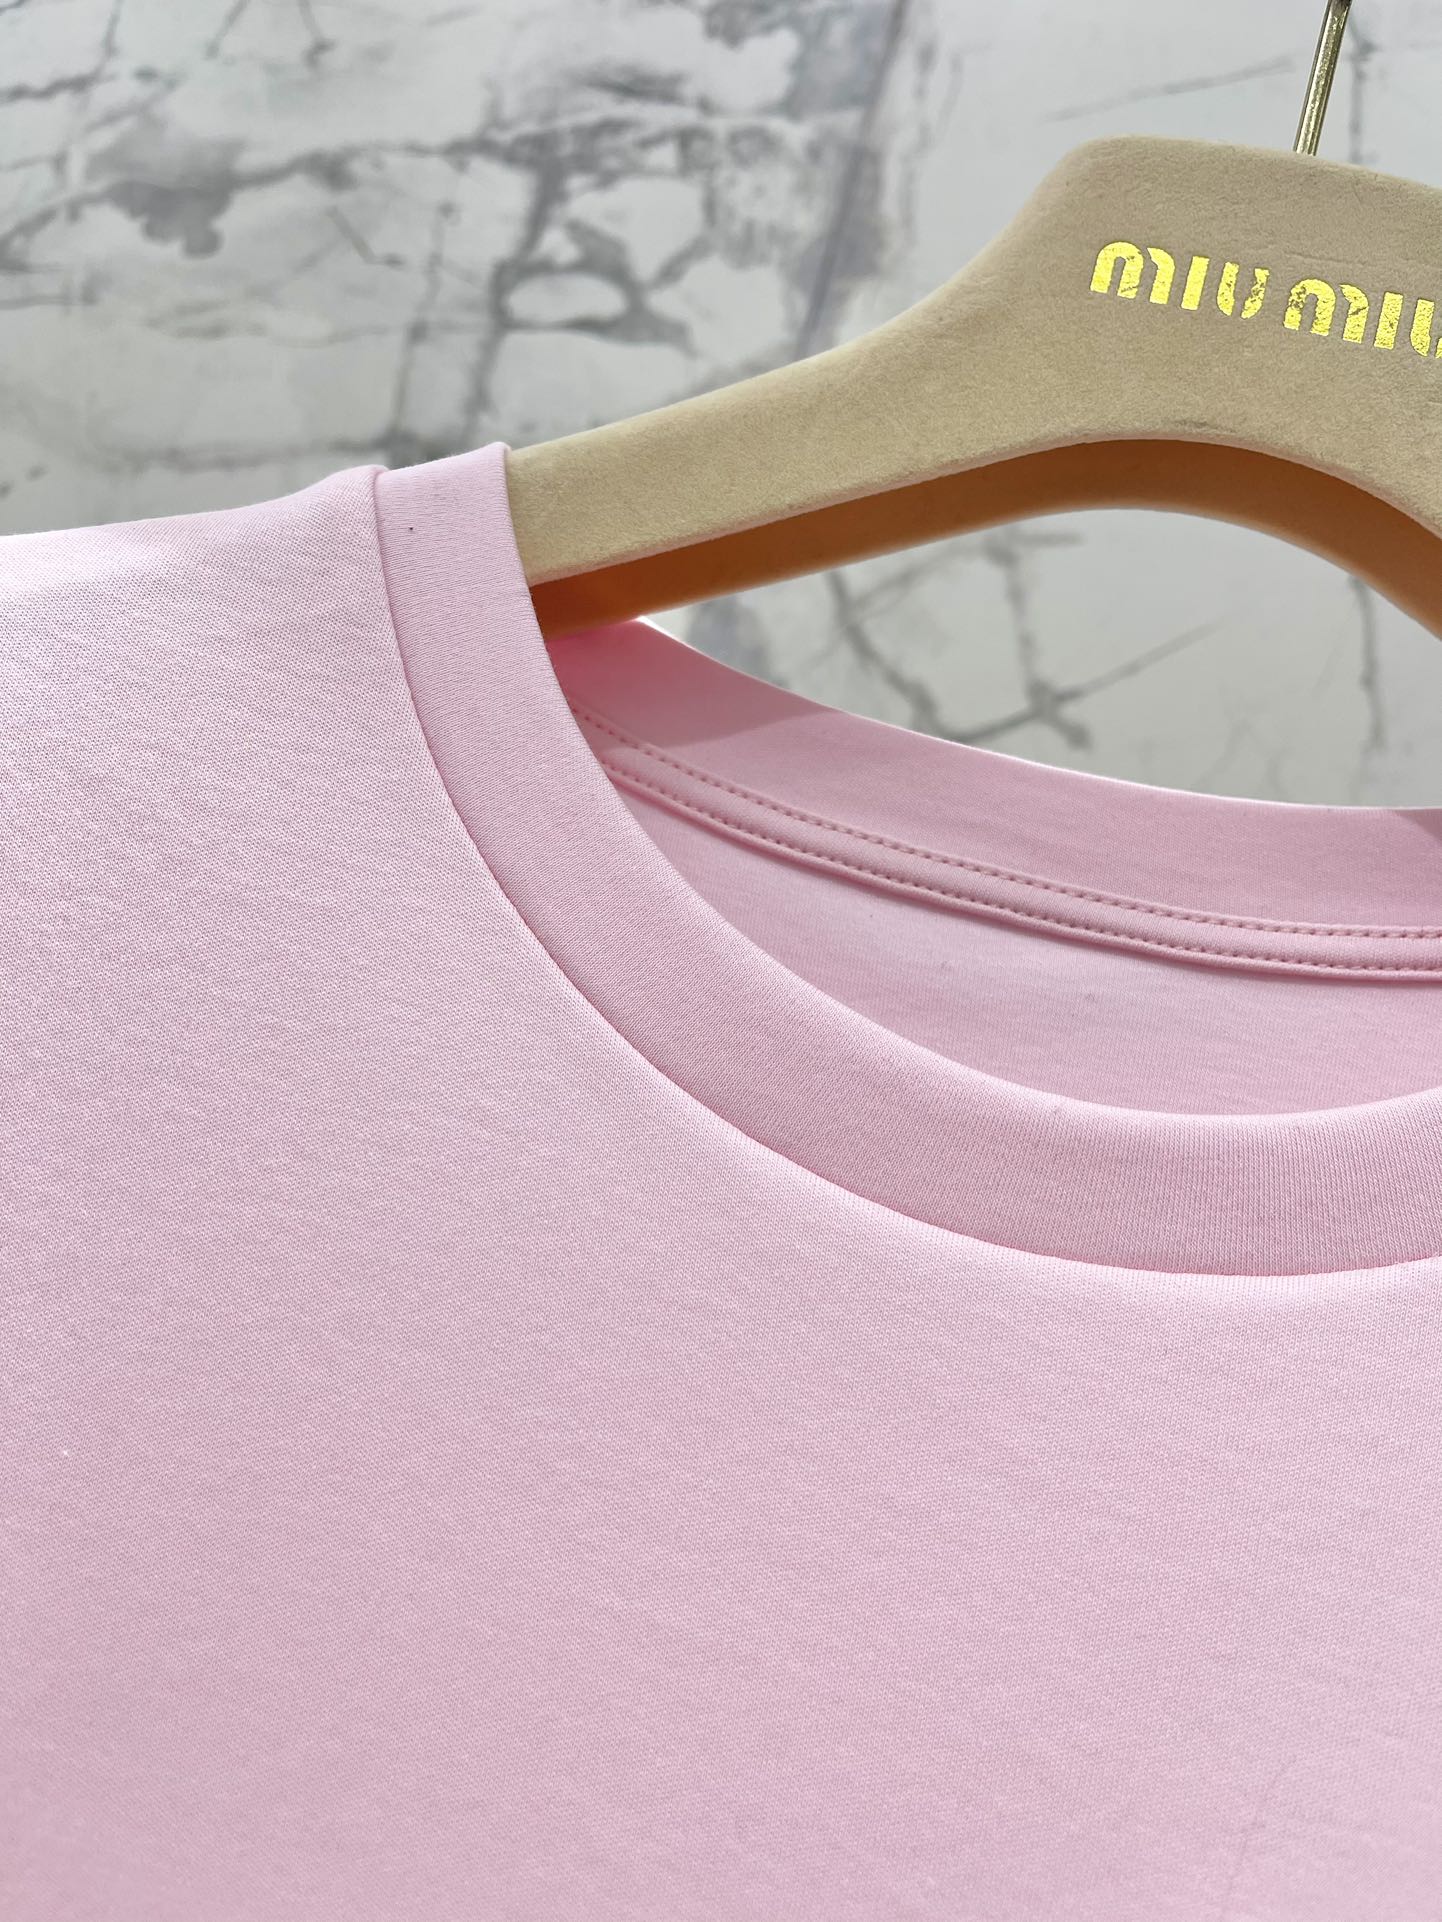 ミュウミュウスカーフスーパーコピー 柔らかい 無袖 Tシャツ トップス ファッション カジュアル 人気 シンプル ピンク_3